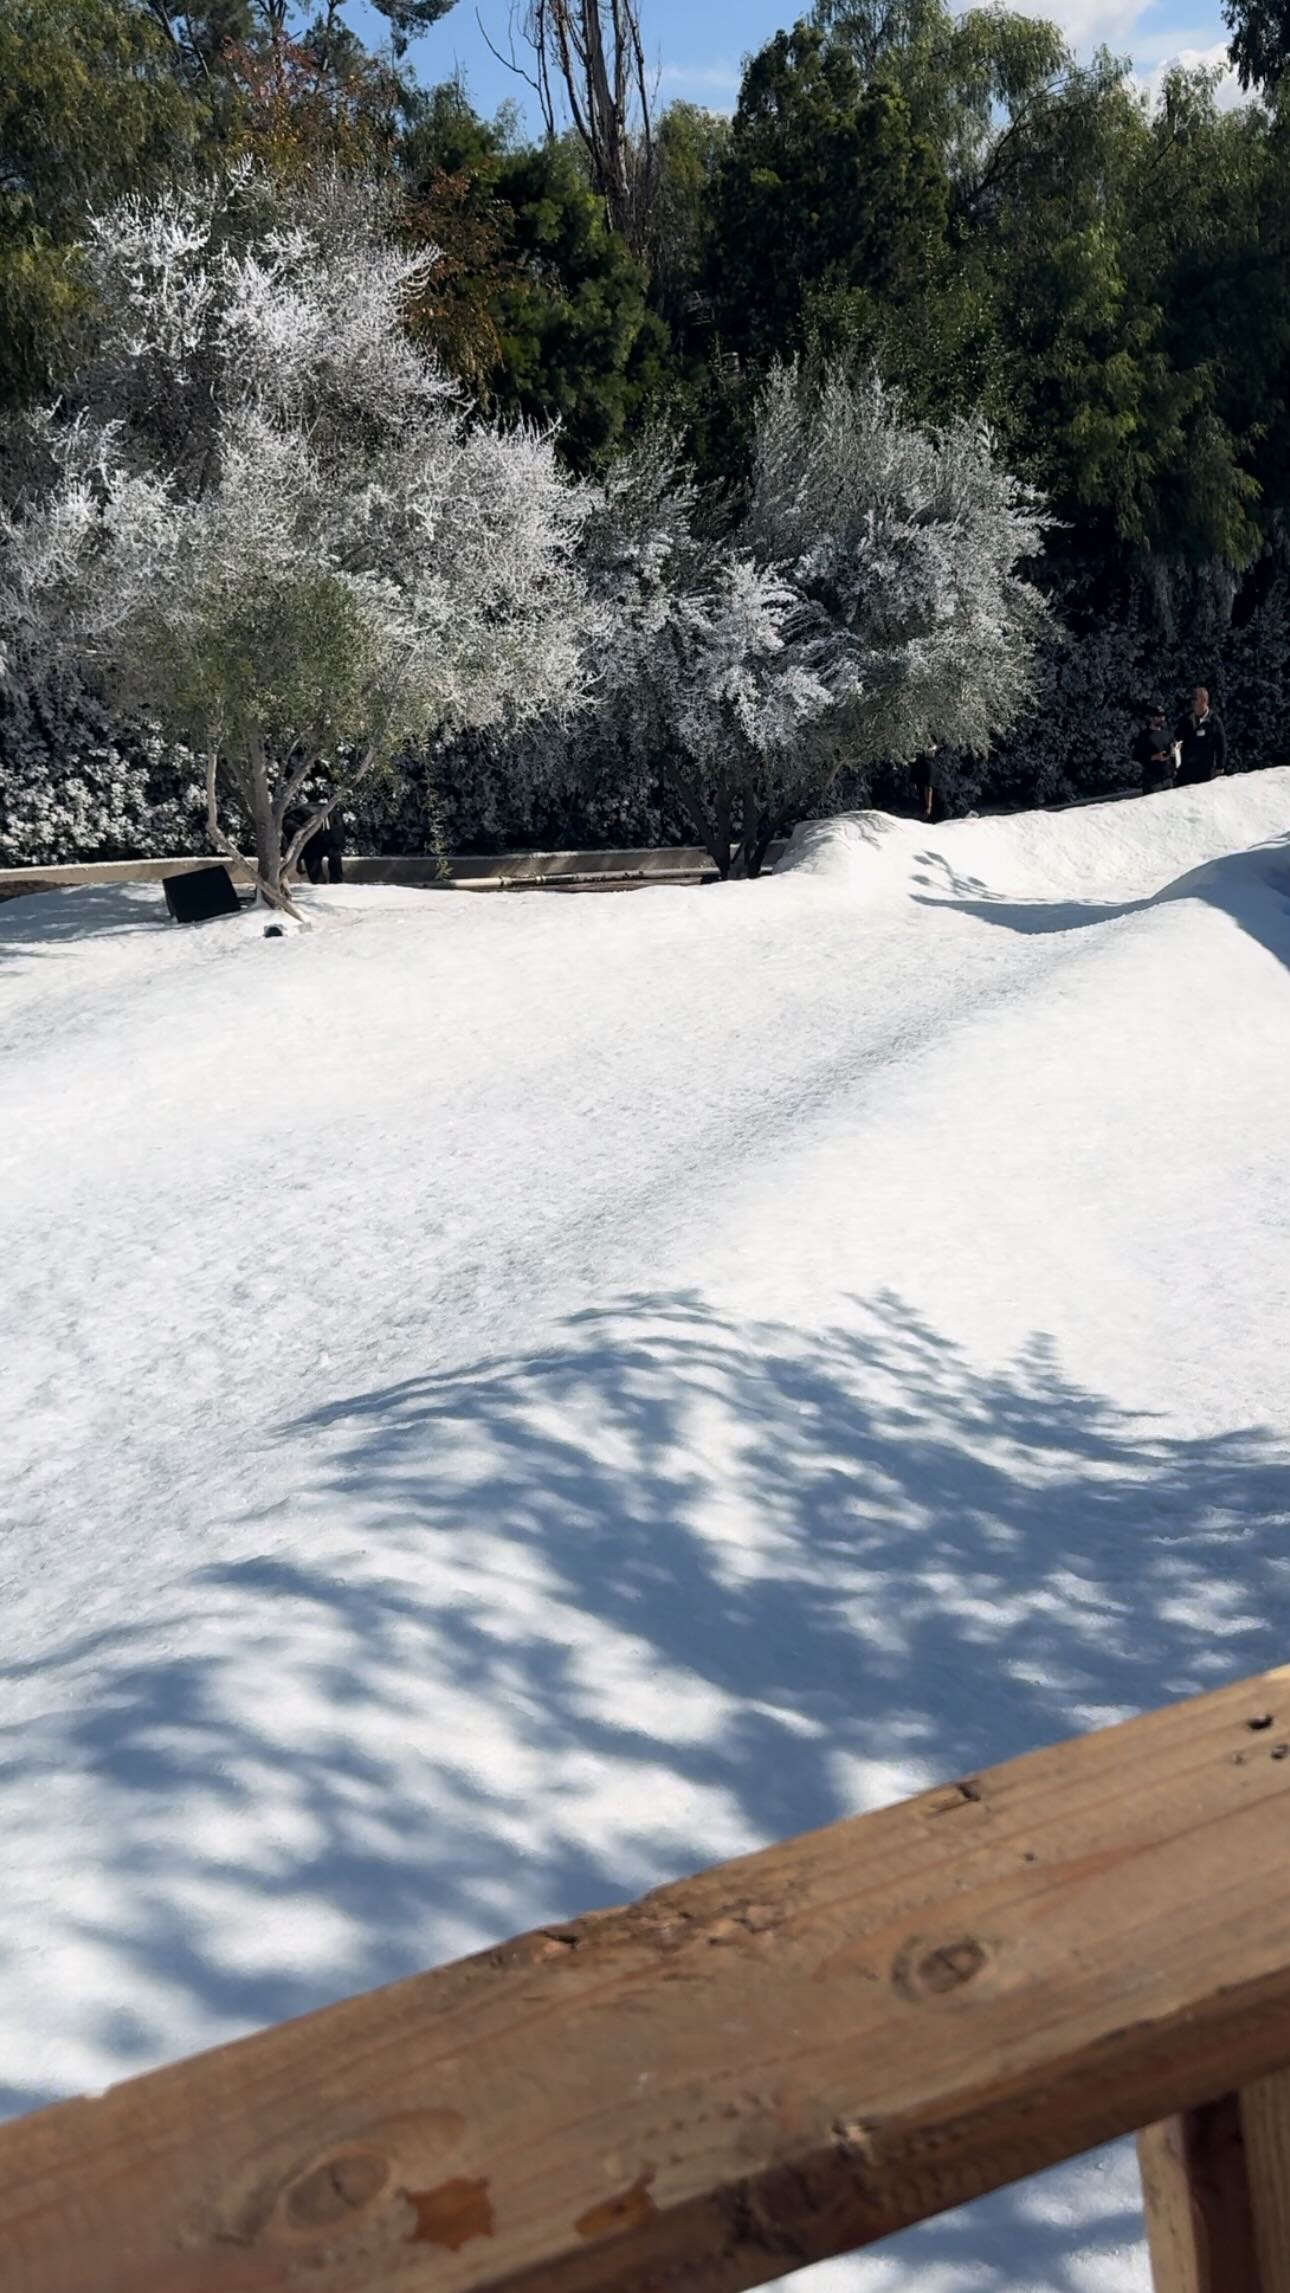 Ким Кардашьян потратила 60 000 долларов, чтобы засыпать свое поместье в Лос Анджелесе искусственным снегом и покататься на санках. Топ фото и видео с места событий